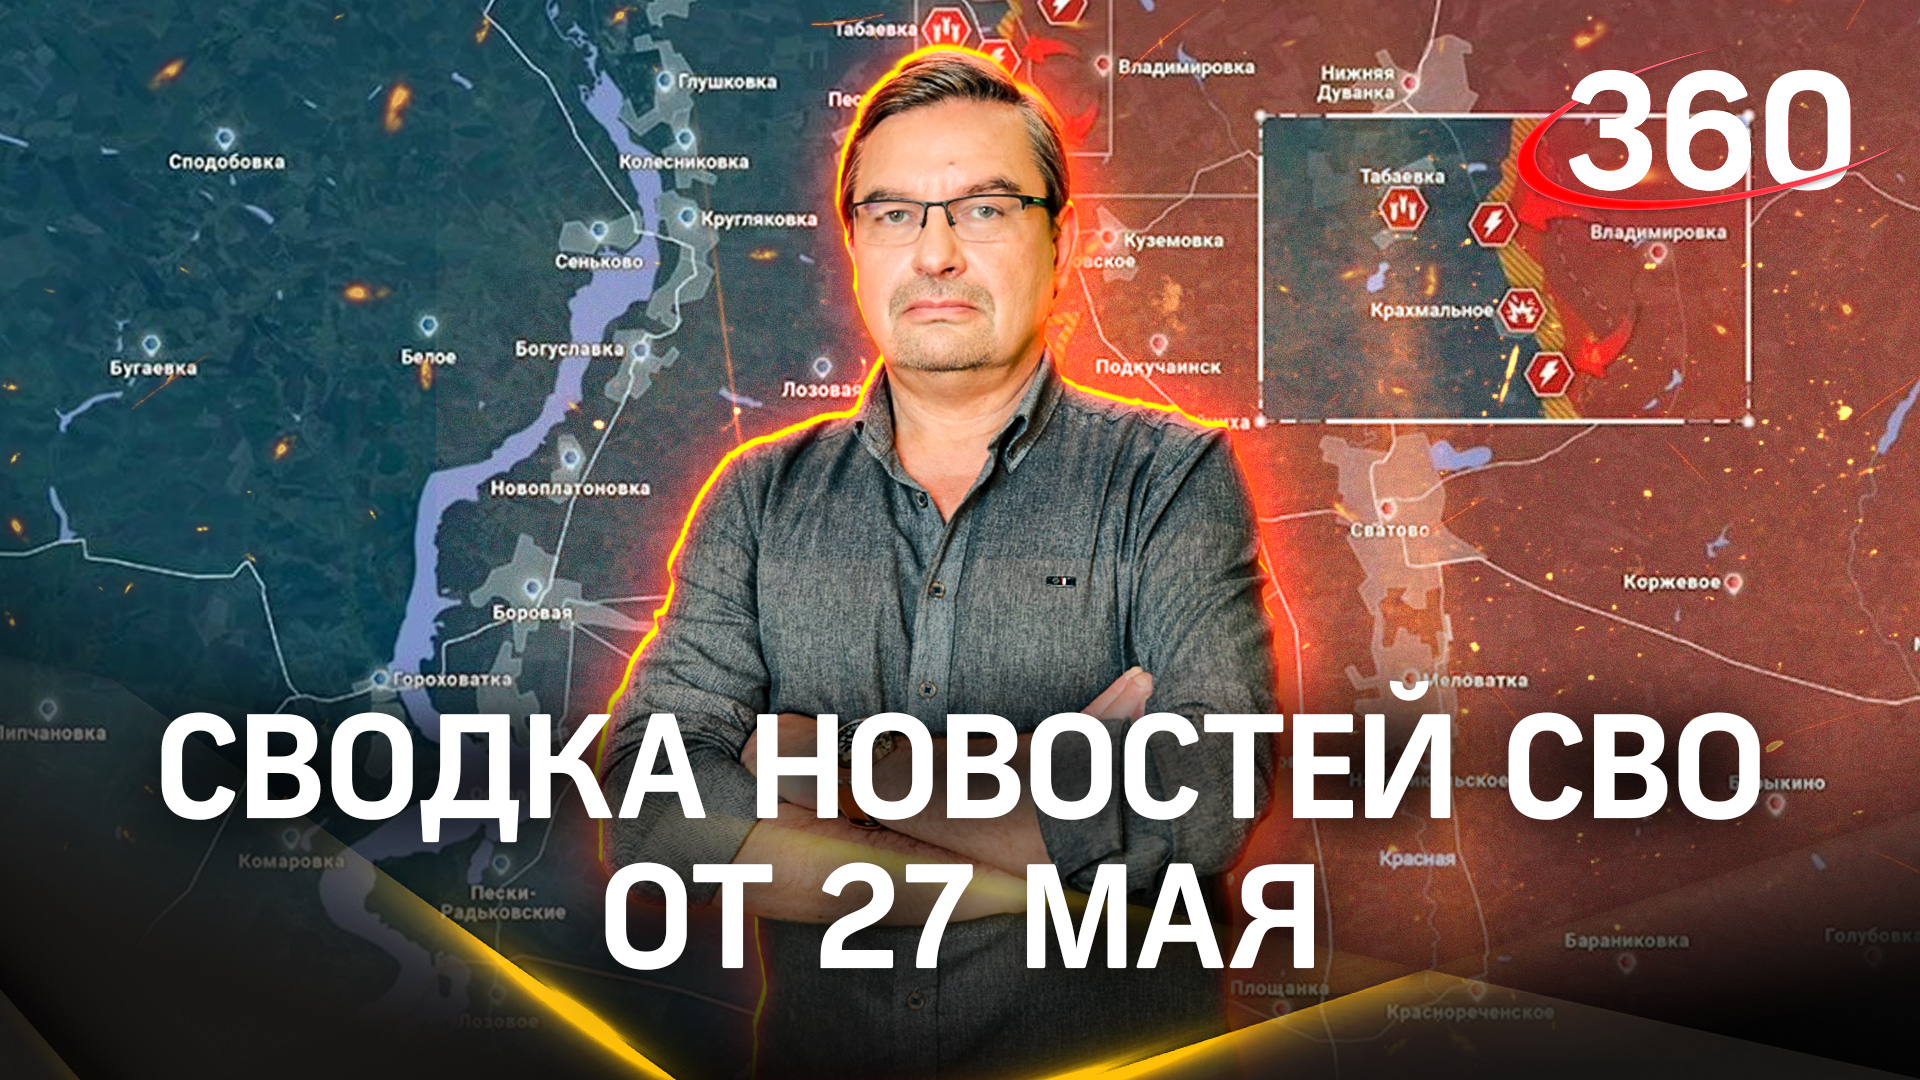 Онуфриенко: «ВСУ раздергивает свои немногочисленные силы». Последняя сводка новостей СВО от 27 мая